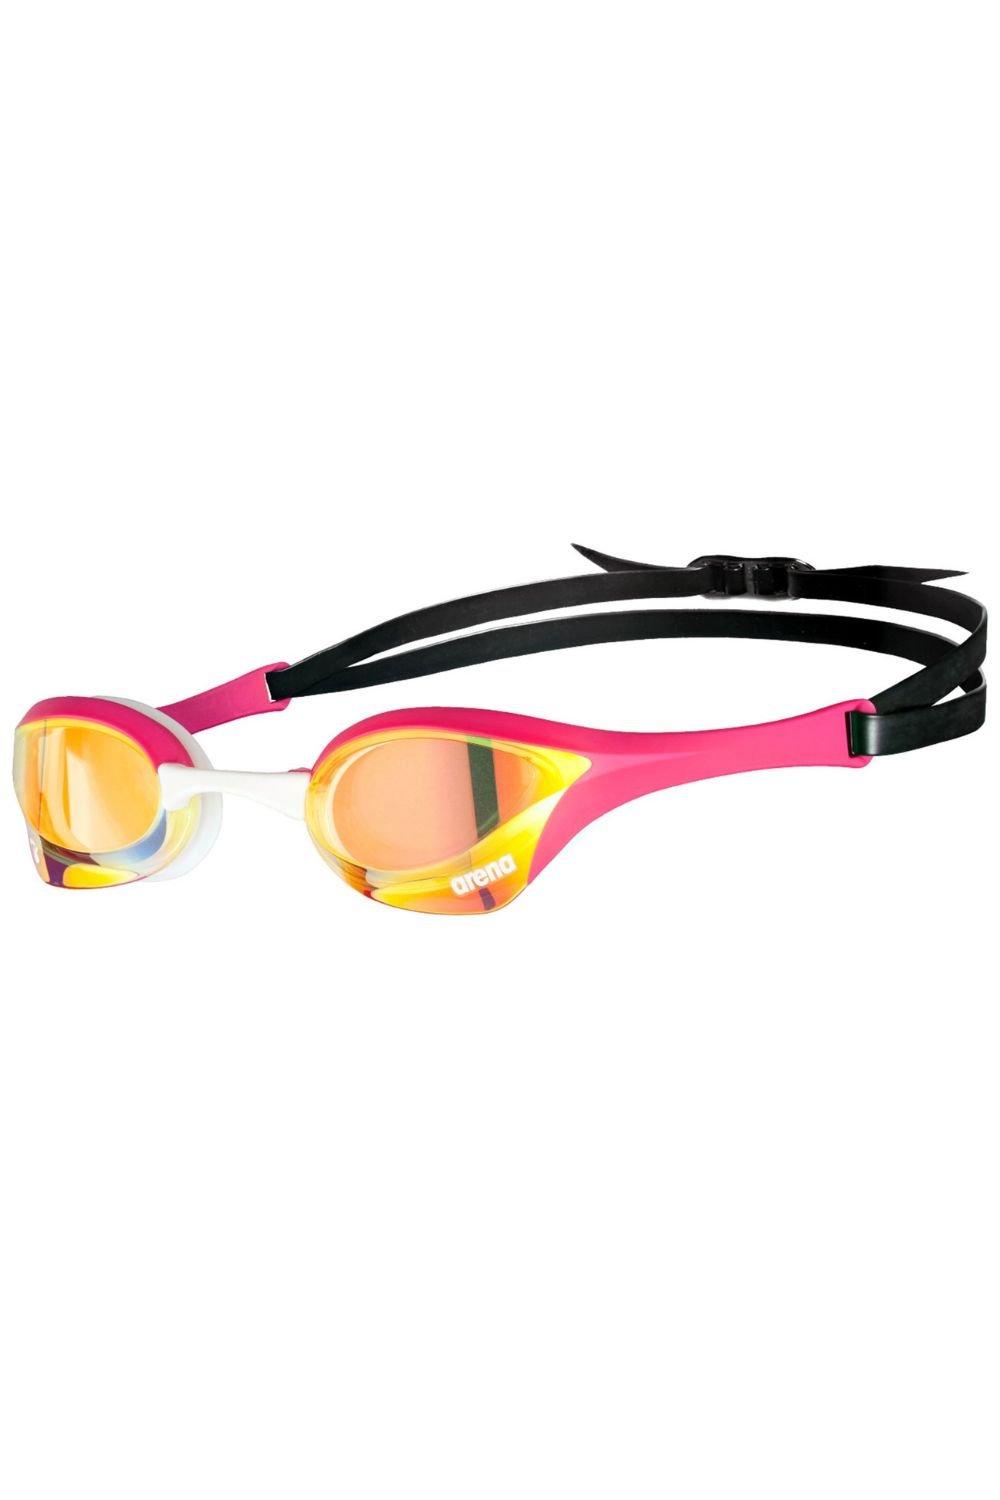 Очки для плавания Cobra Ultra Swipe Mirror - Зеркальные линзы Arena, розовый очки для плавания arena cobra ultra swipe eu 003929 dark smoke black blue